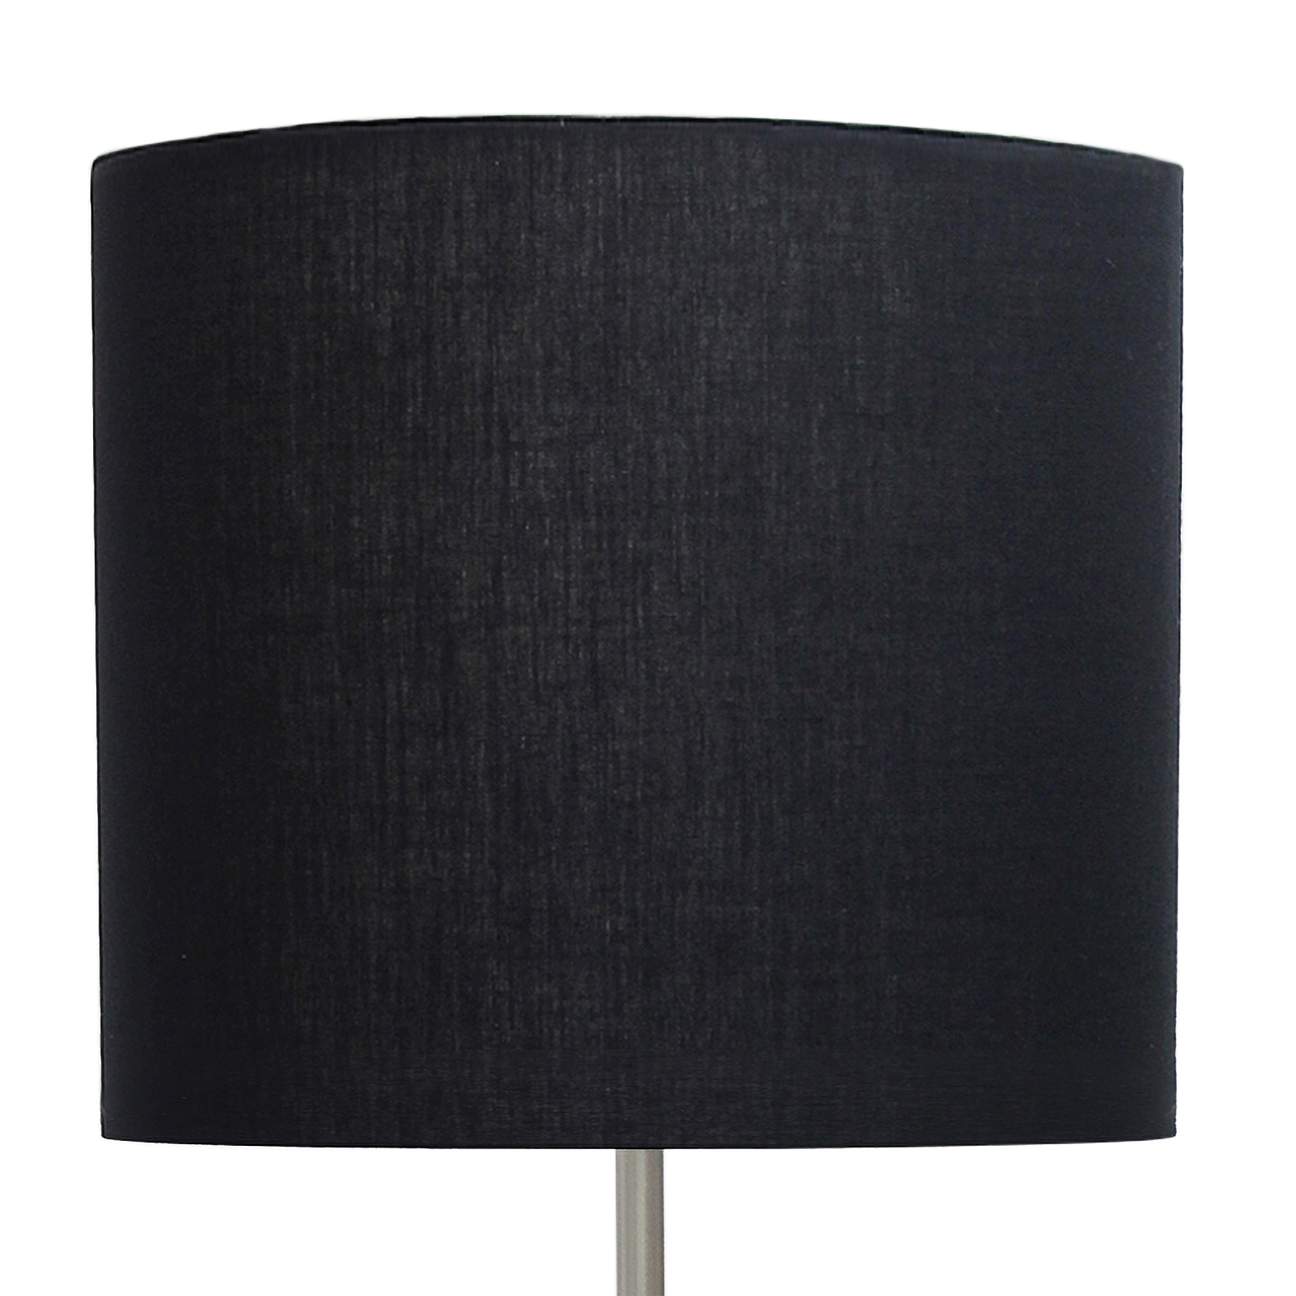 Analisa Brushed Nickel and Black Shade Floor Lamp - #35N96 | Lamps Plus